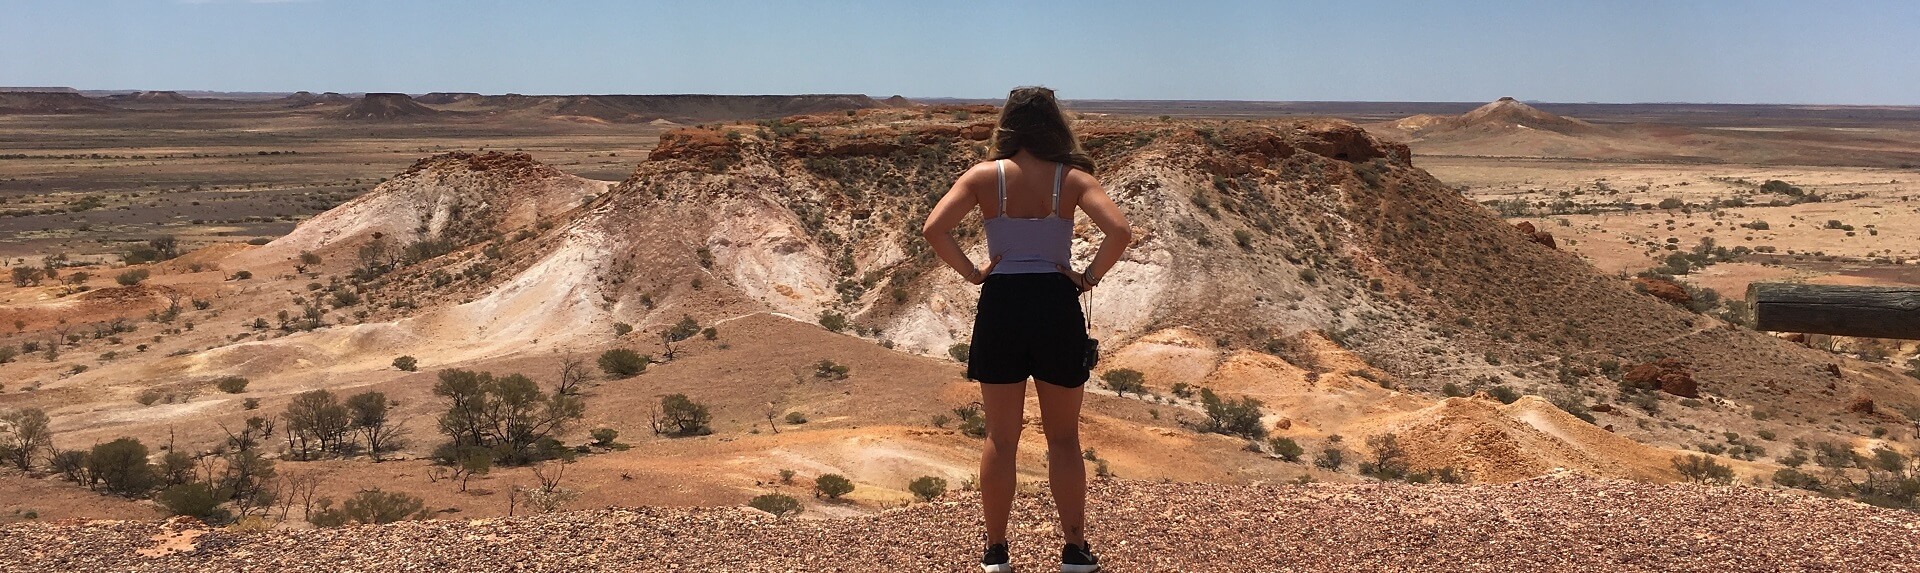 8 Day Adelaide to Uluru Tour